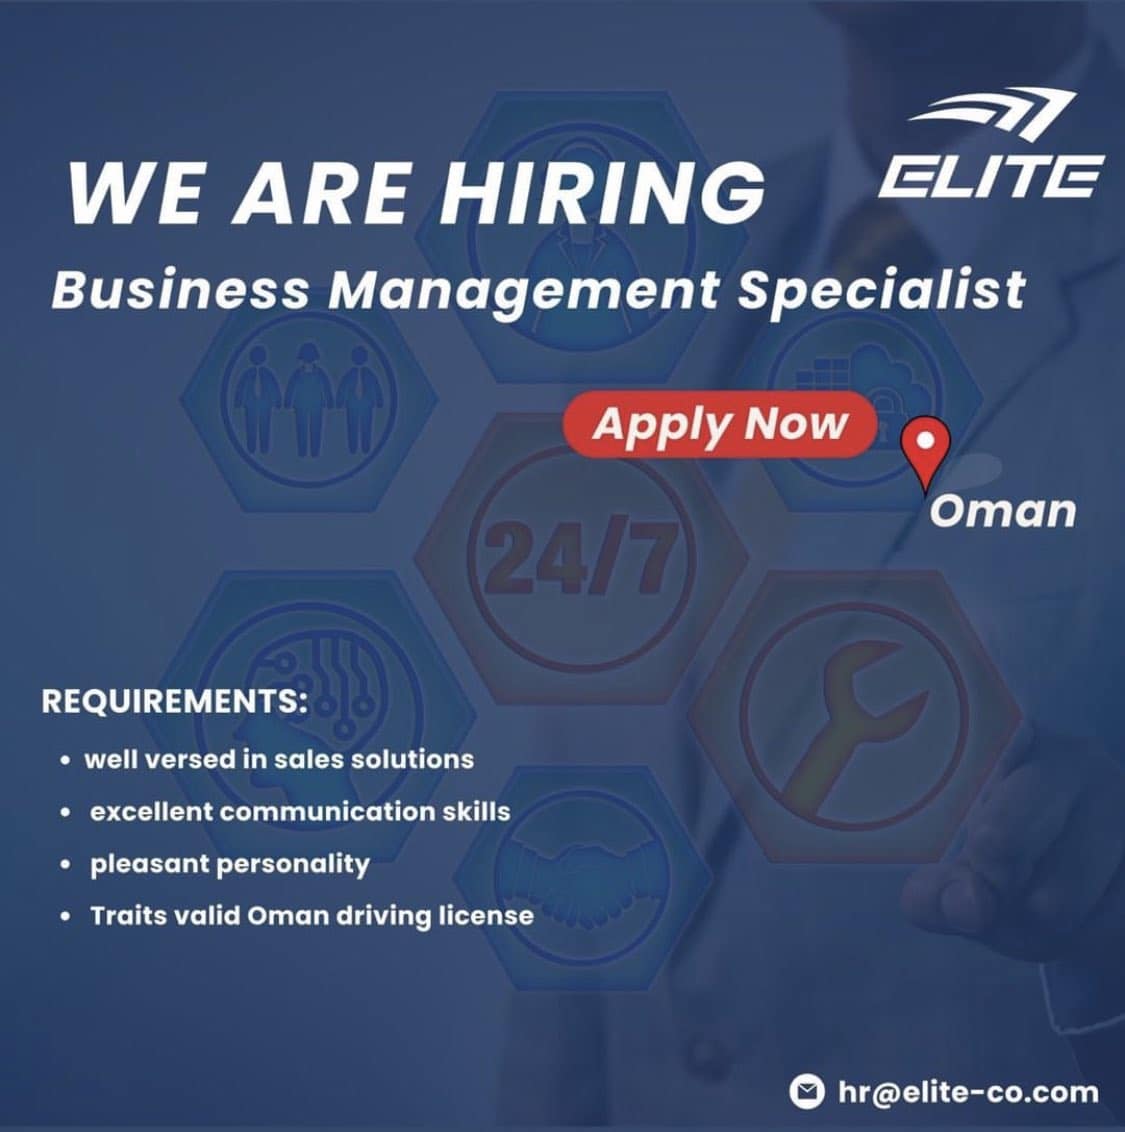 شركة Elite للتوصيل في سلطنة عمان تعلن عن وظائف شاغرة برواتب ومزايا عالية لجميع الجنسيات